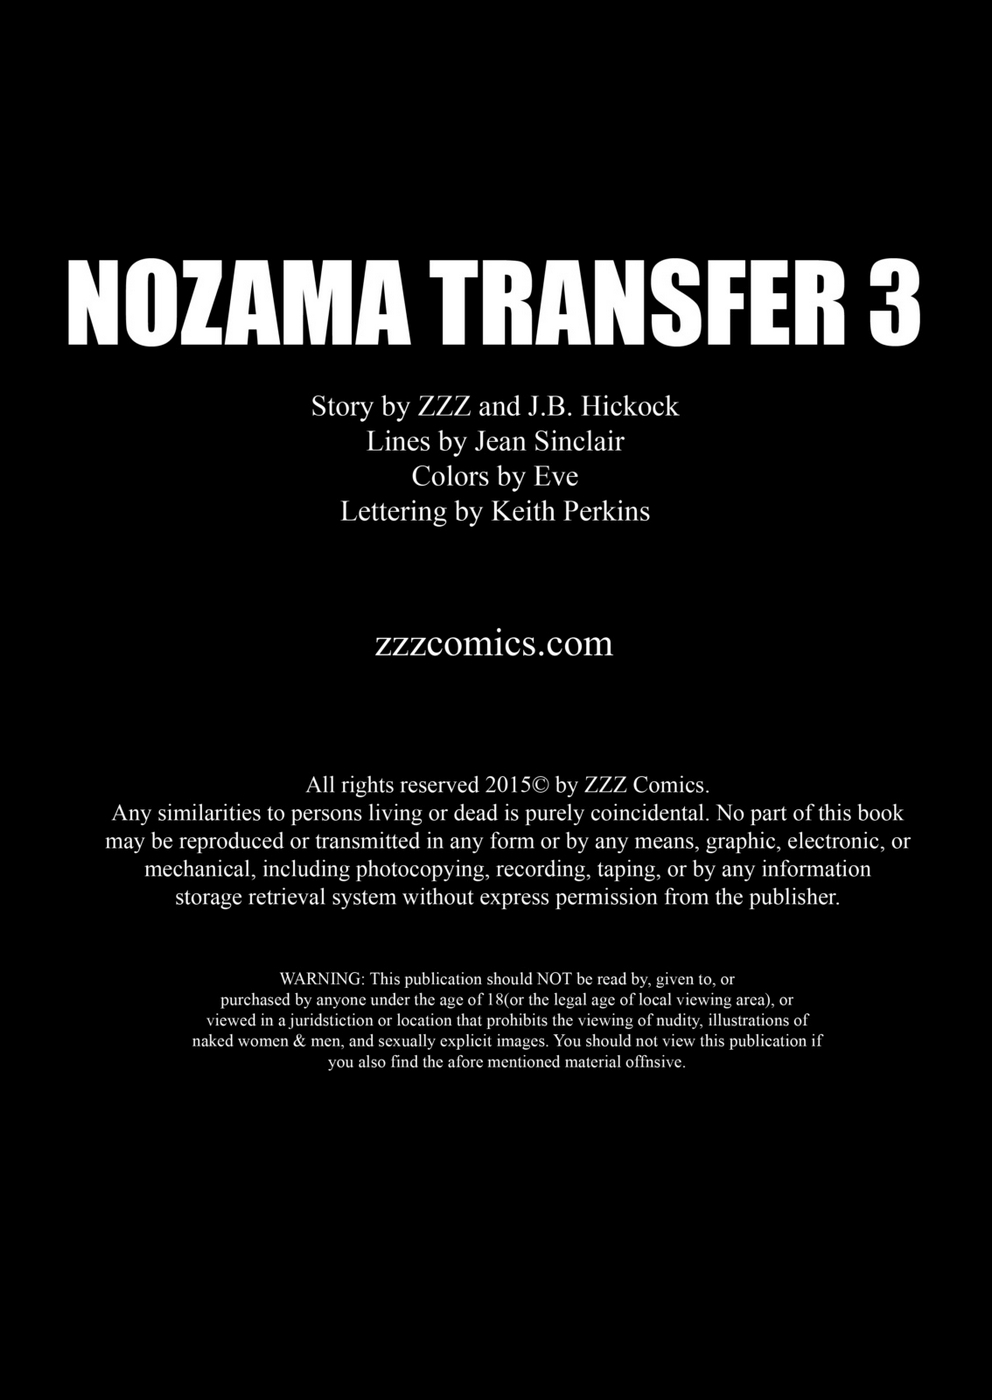 zzz nozama transfert 3